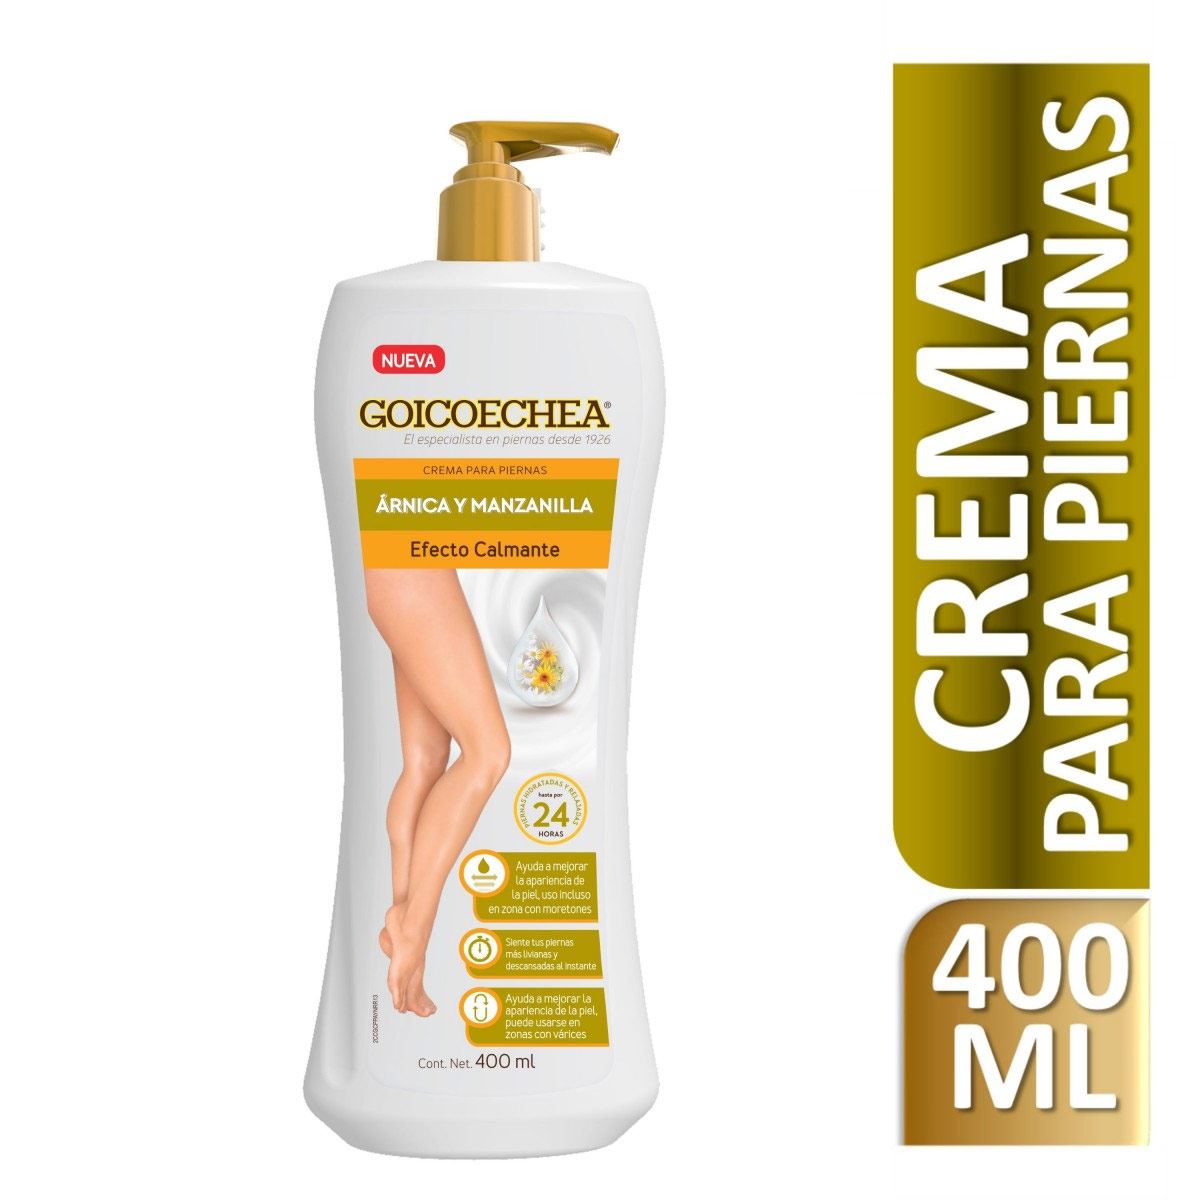 Goicoechea Crema Árnica y Manzanilla Efecto Calmante 400 ml